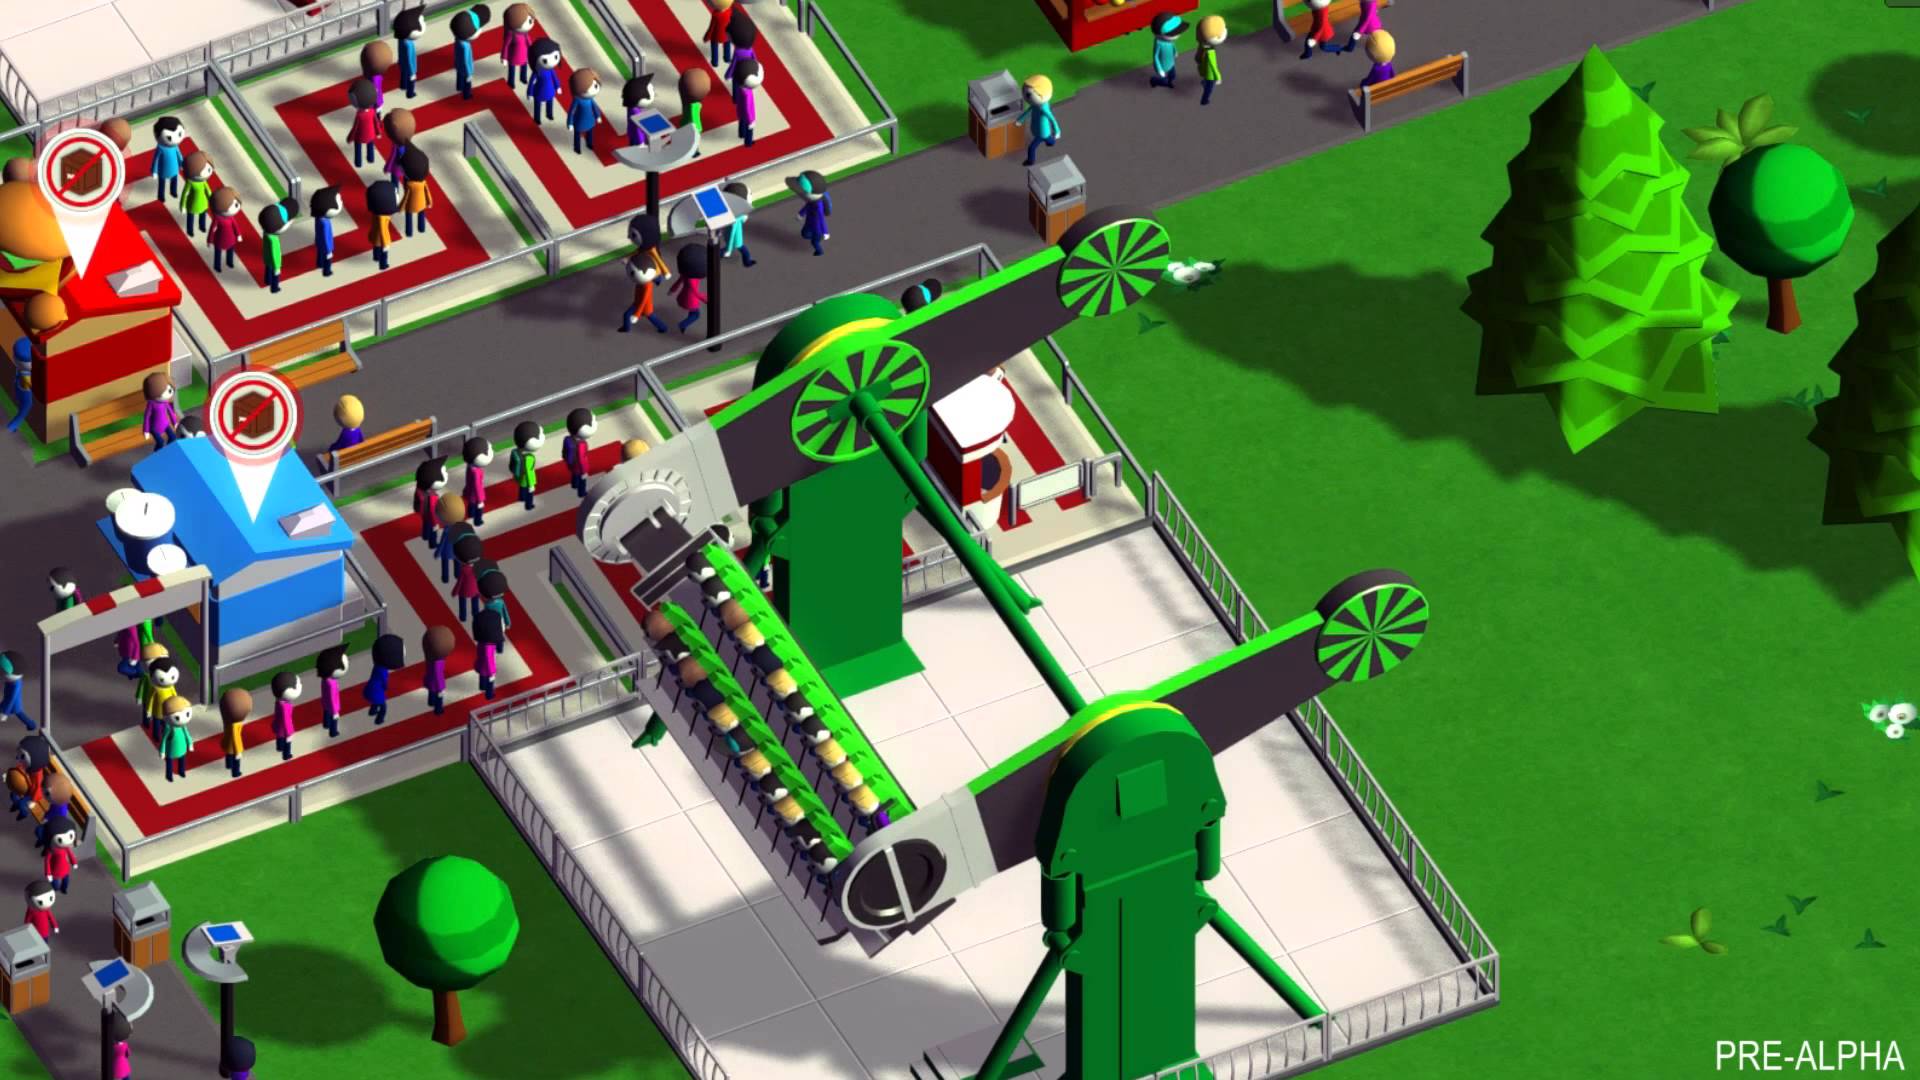 新テーマパークみたいな遊園地経営ゲーム Parkitect に約1500円投資した